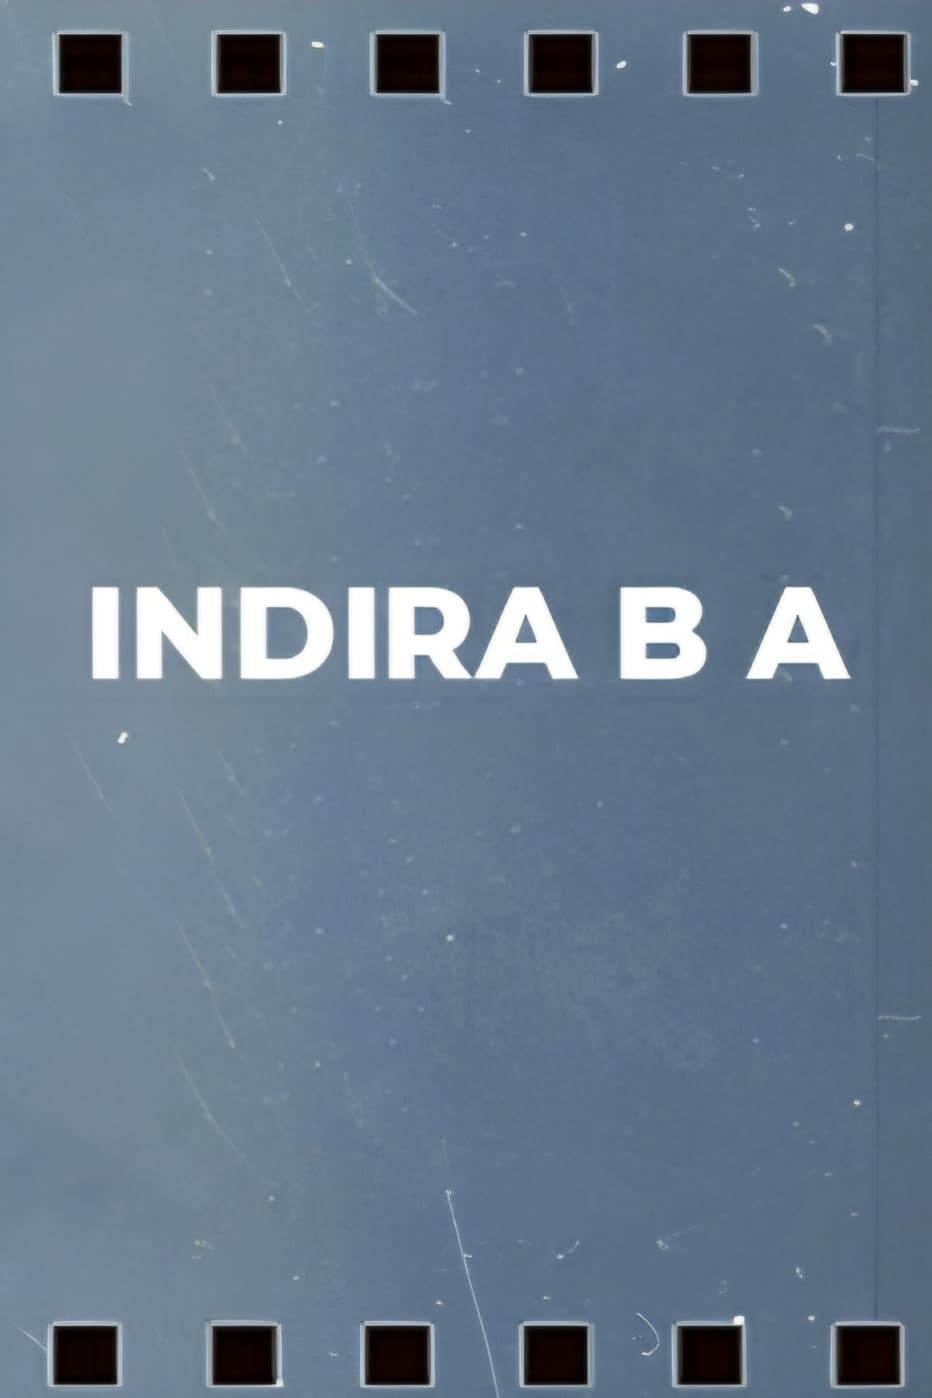 Indira B.A.